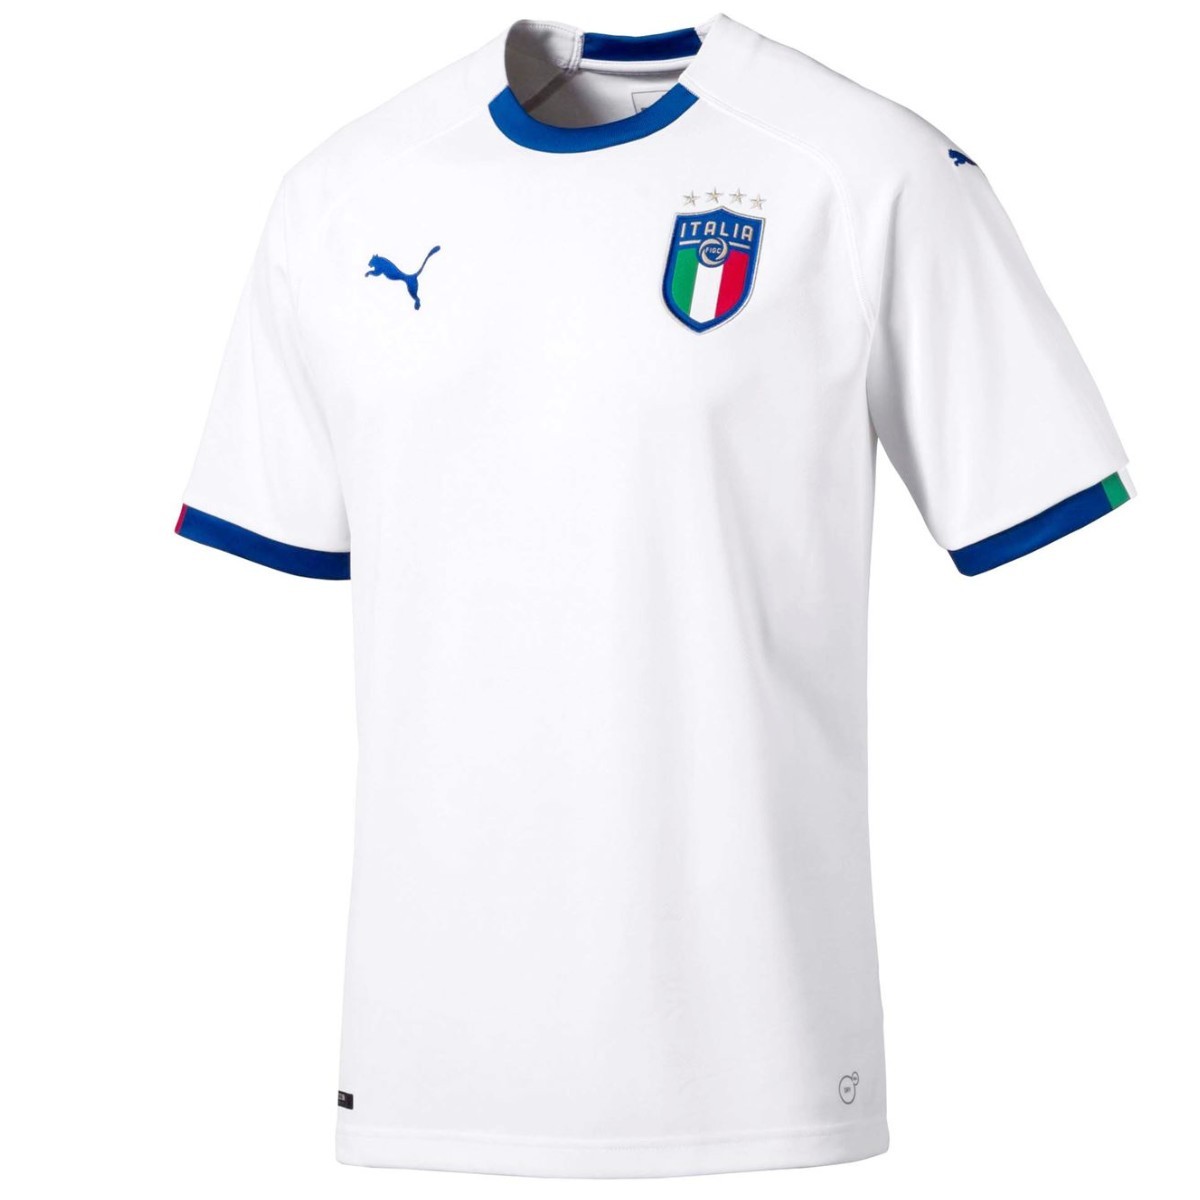 italian football team jersey